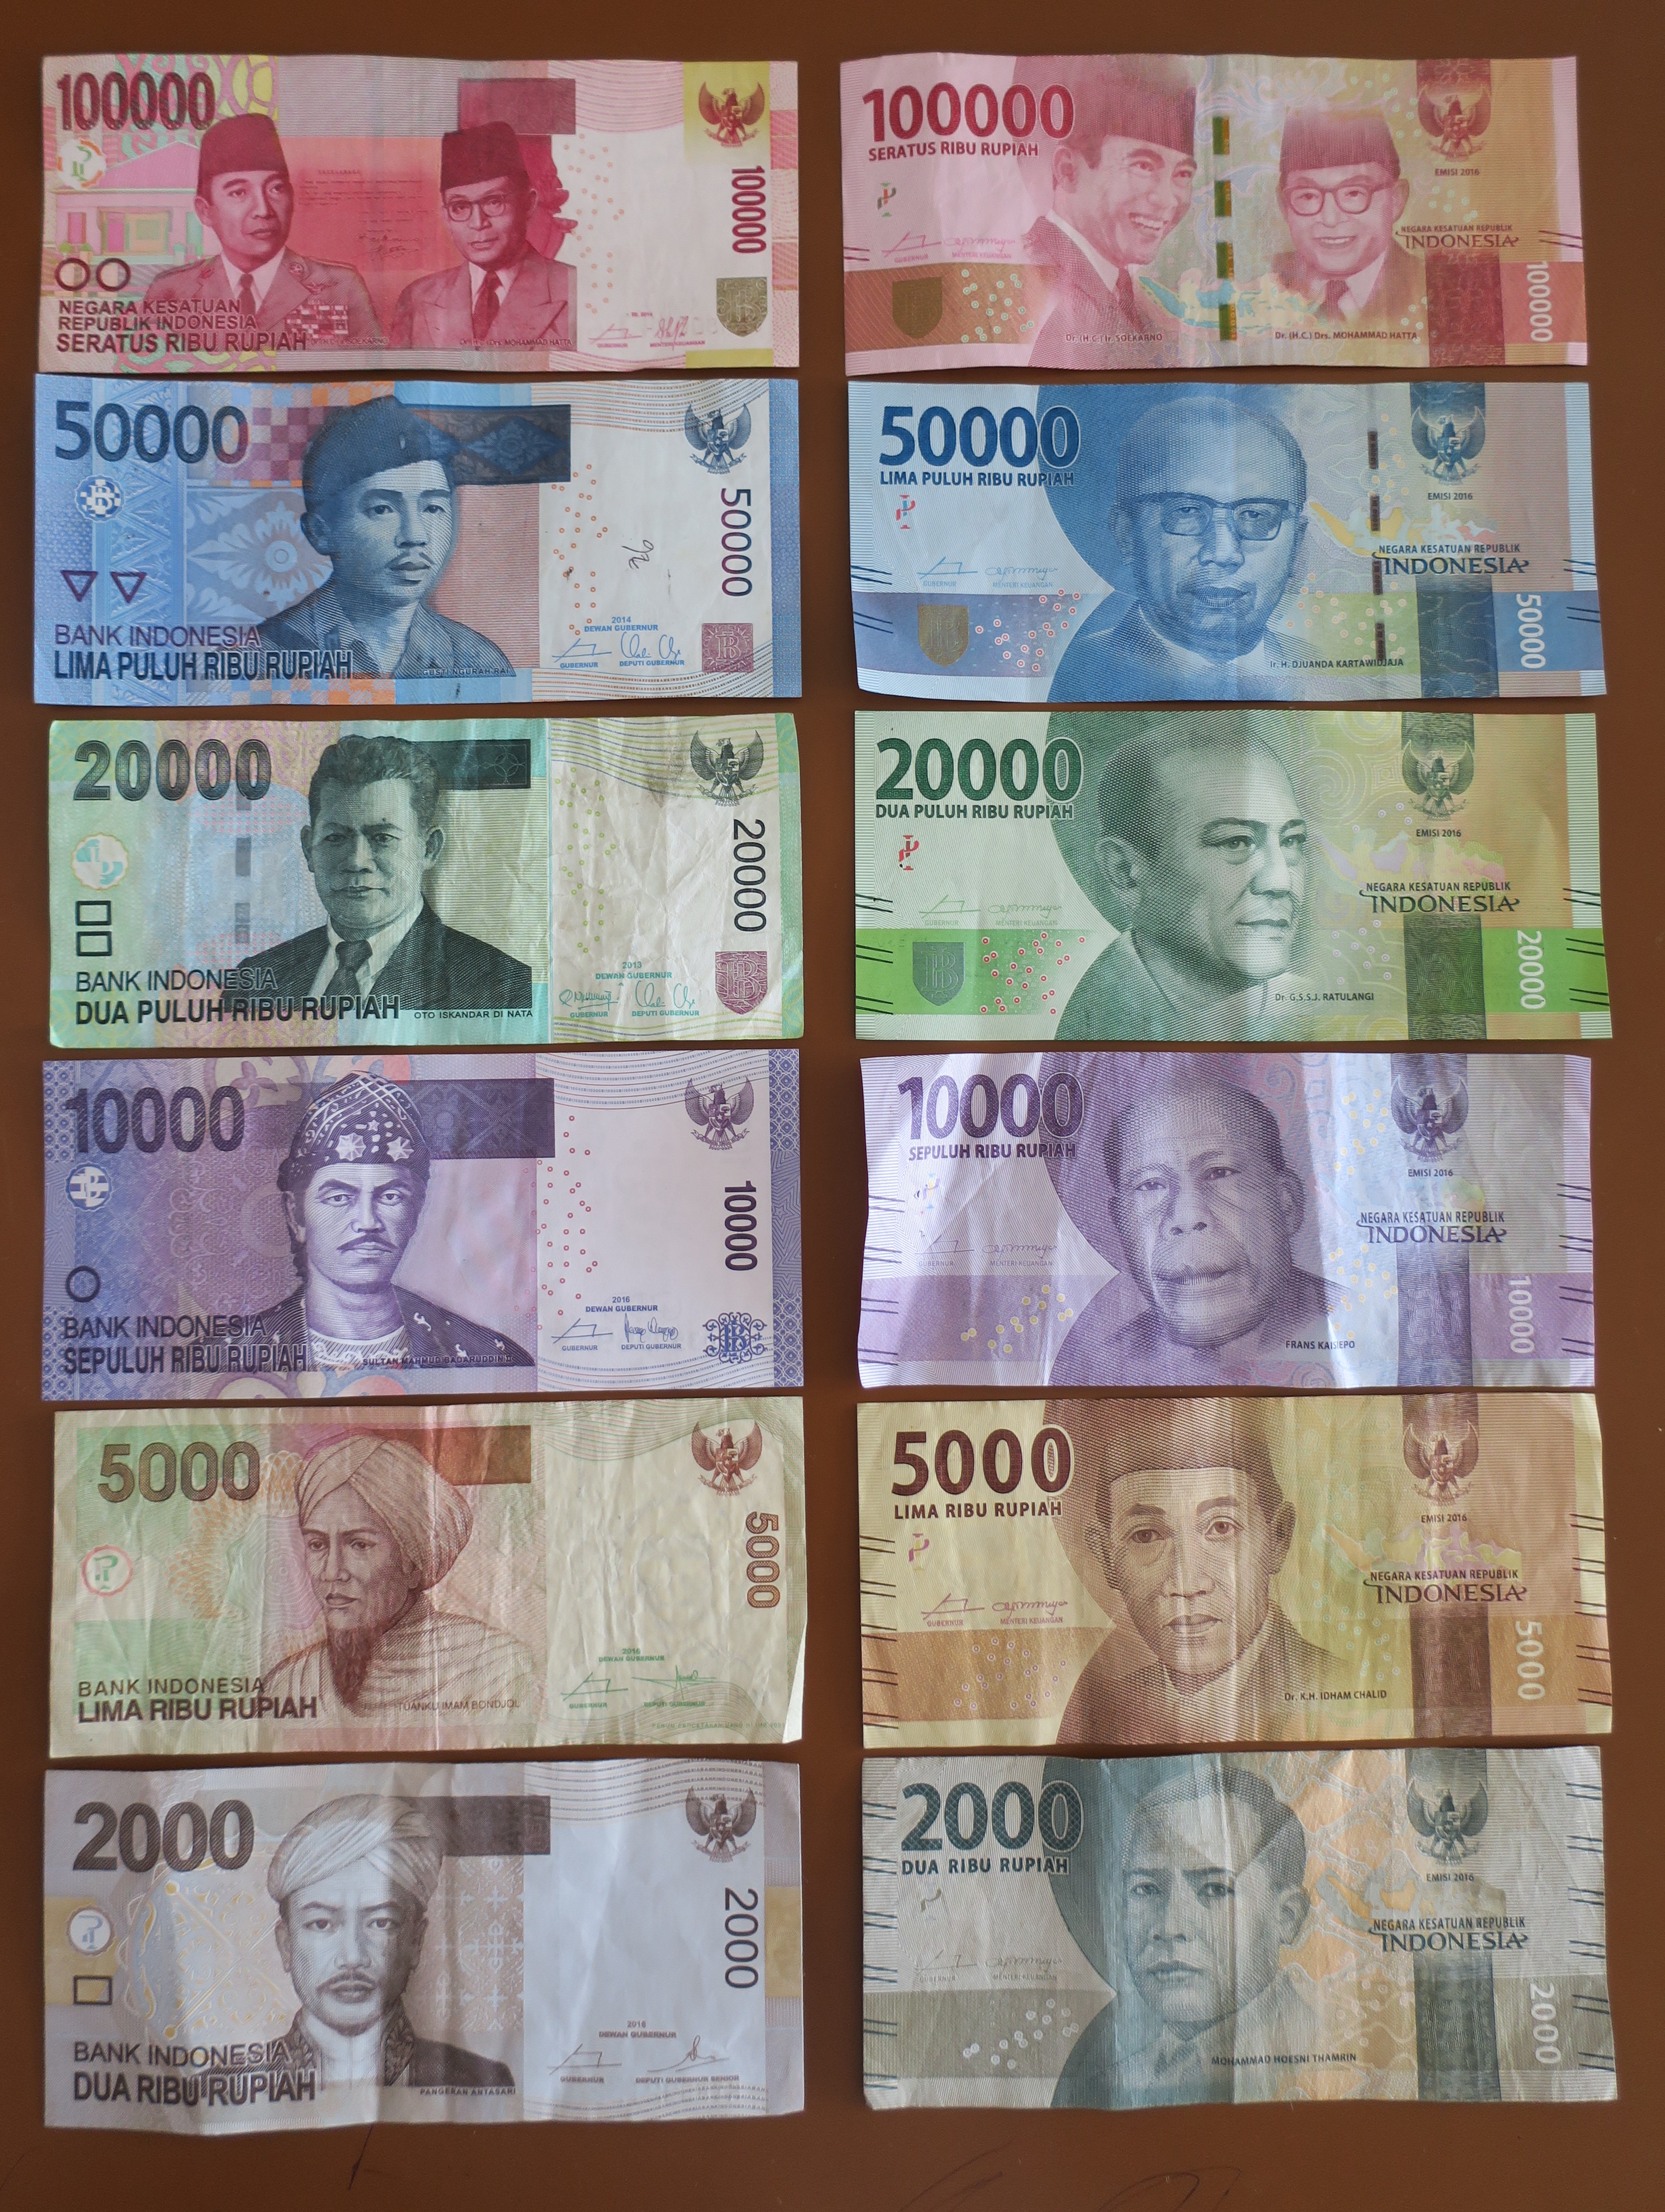 インドネシア紙幣 インドネシア旧紙幣